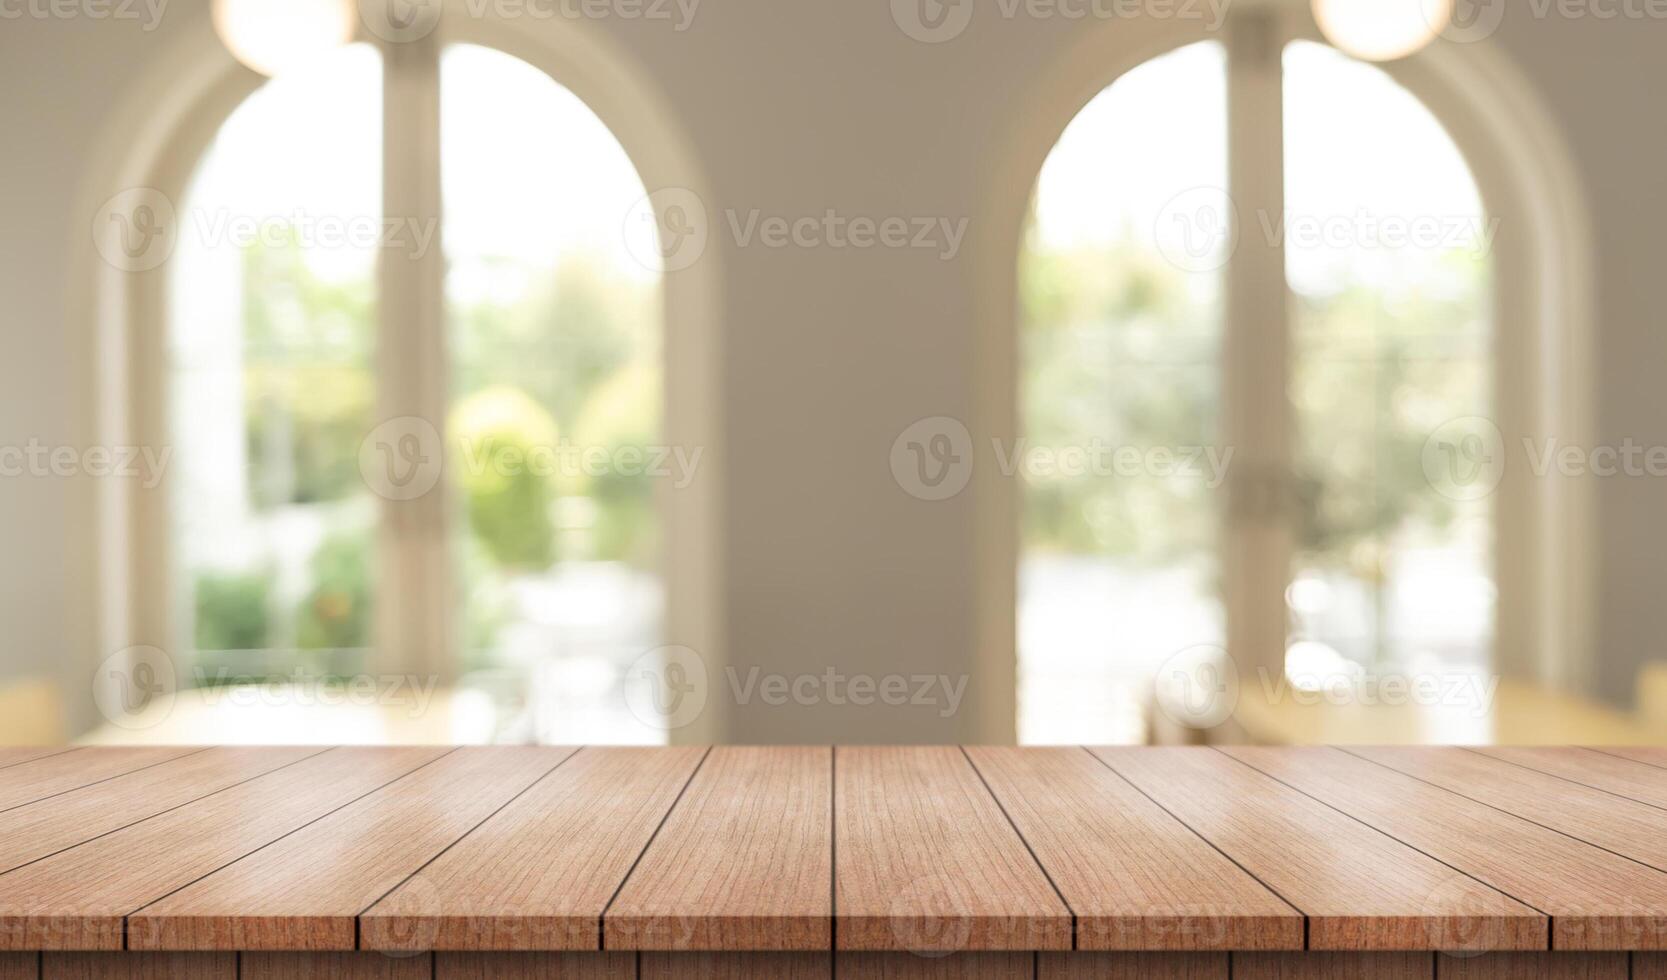 vacío de madera mesa parte superior con luces bokeh en difuminar restaurante antecedentes. foto